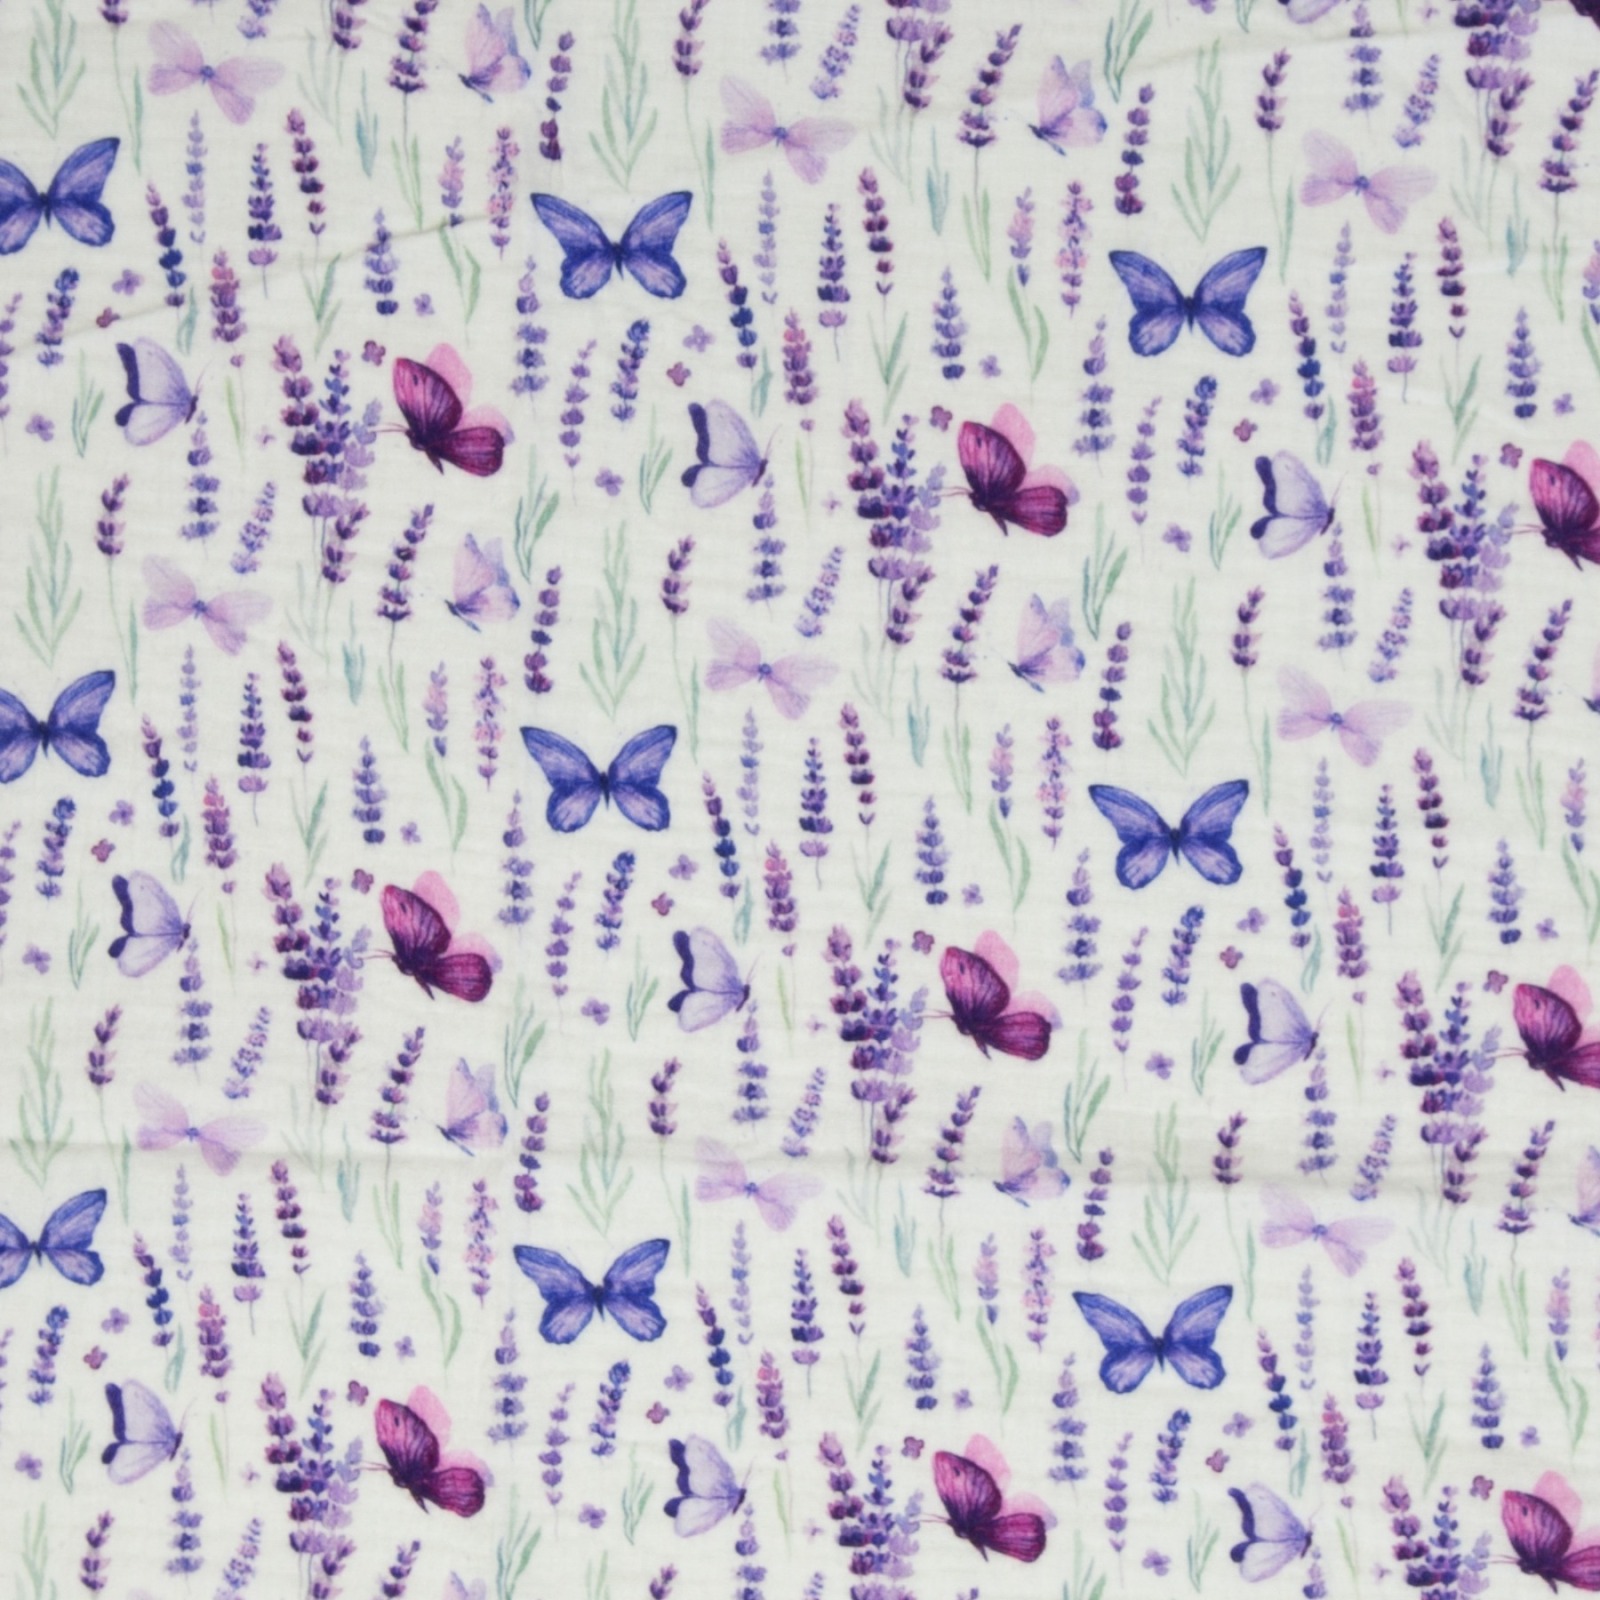 0,5m Musselin Thea Baumwolle Lavendel Schmetterlinge, weiß flieder Lila 3